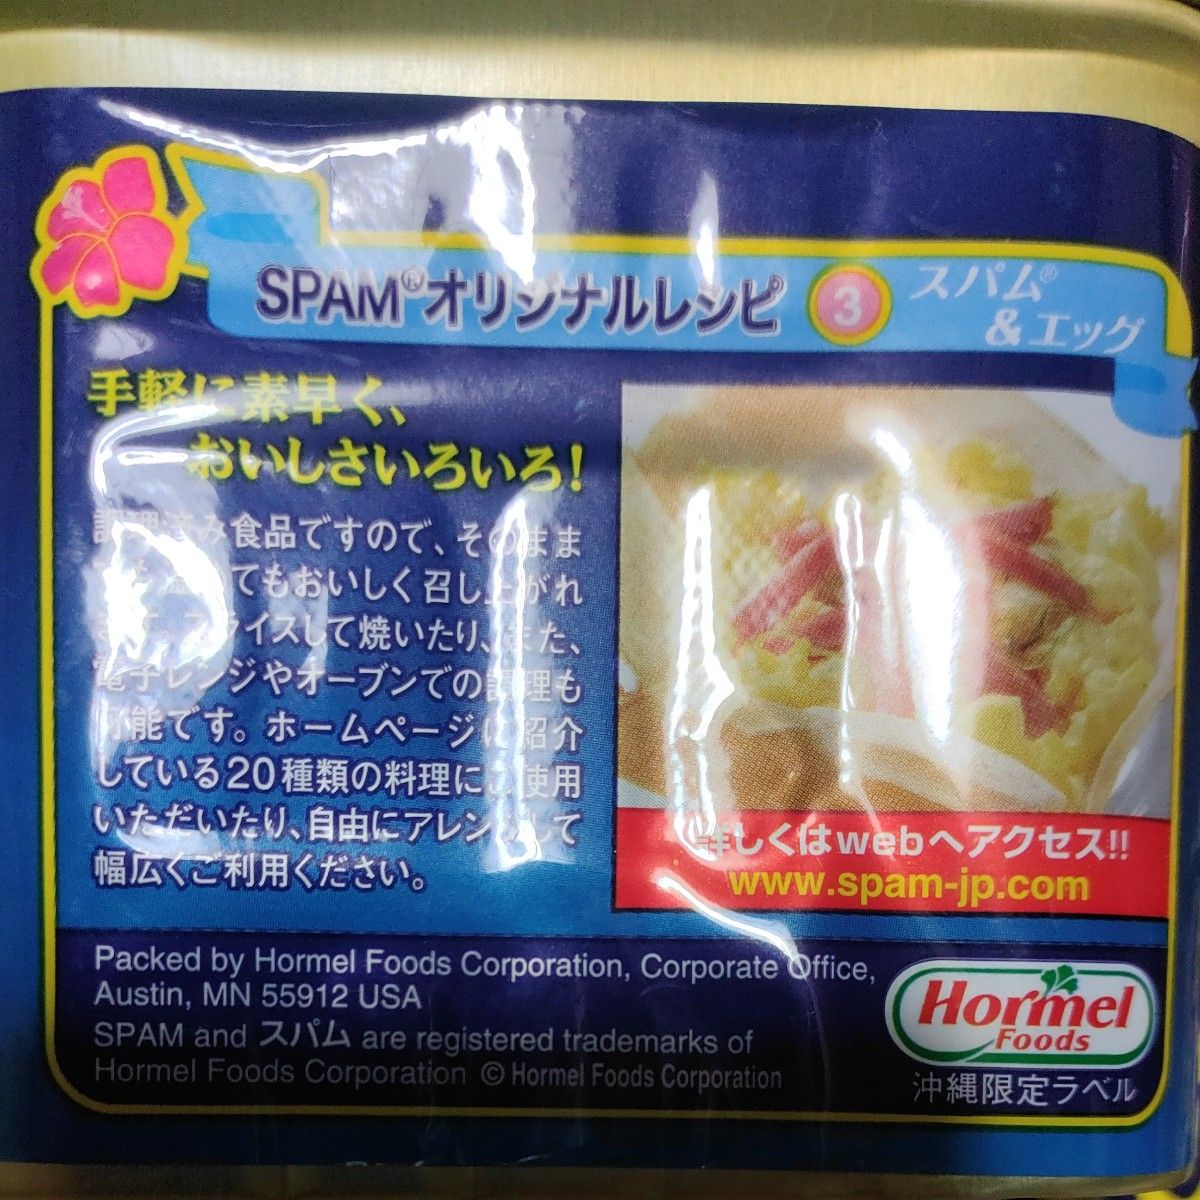 スパム 25% 減塩 沖縄限定 ラベル ランチョンミート  6缶 沖縄 ホメール Hormel Foods